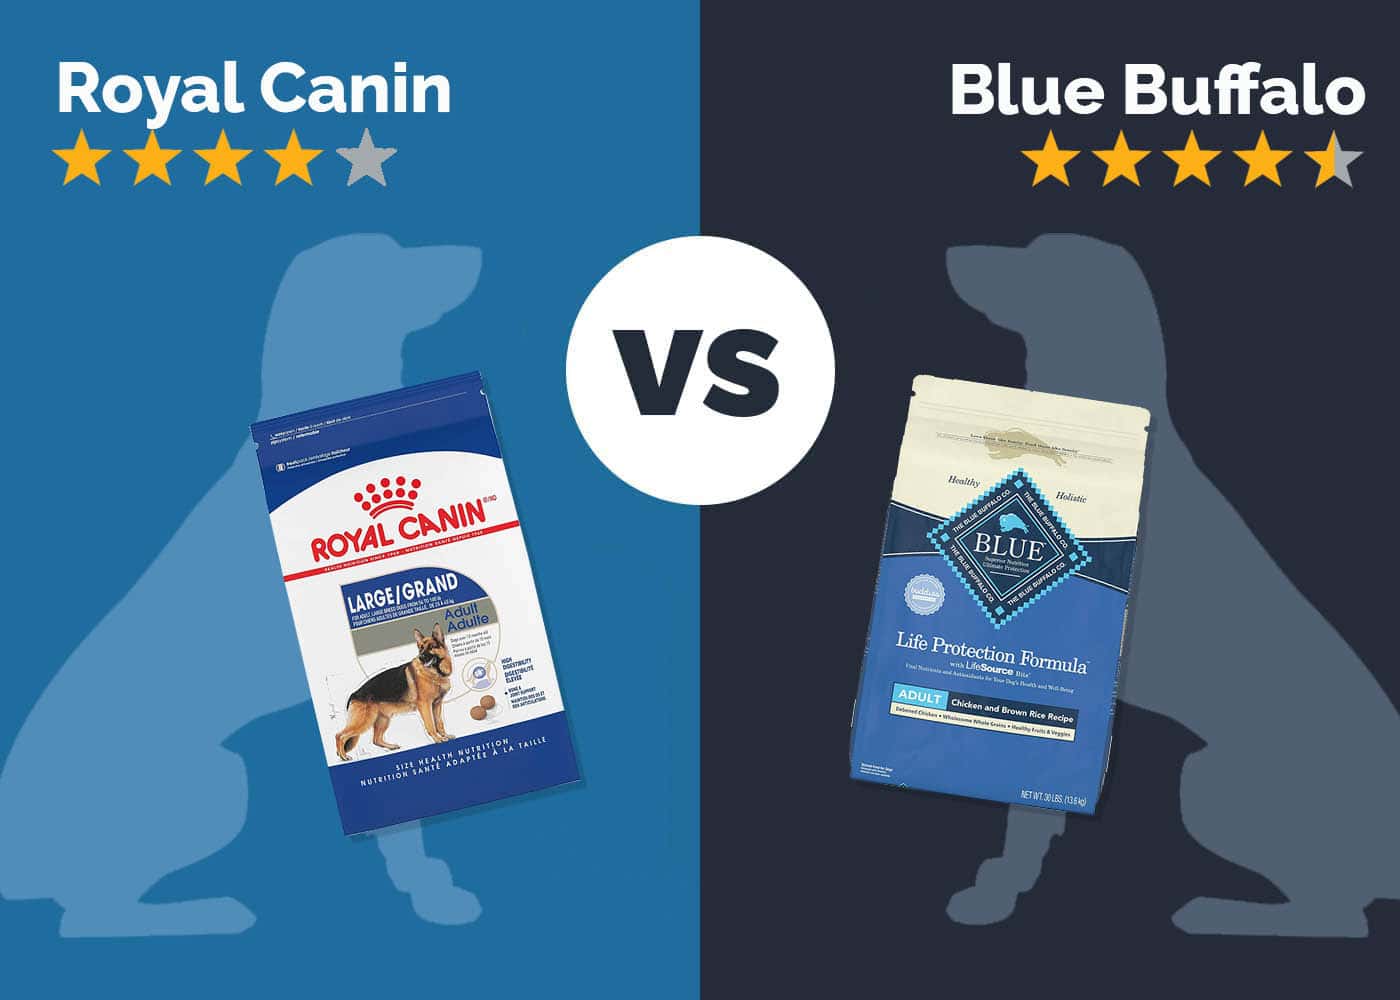 Royal Canin vs Blue Buffalo